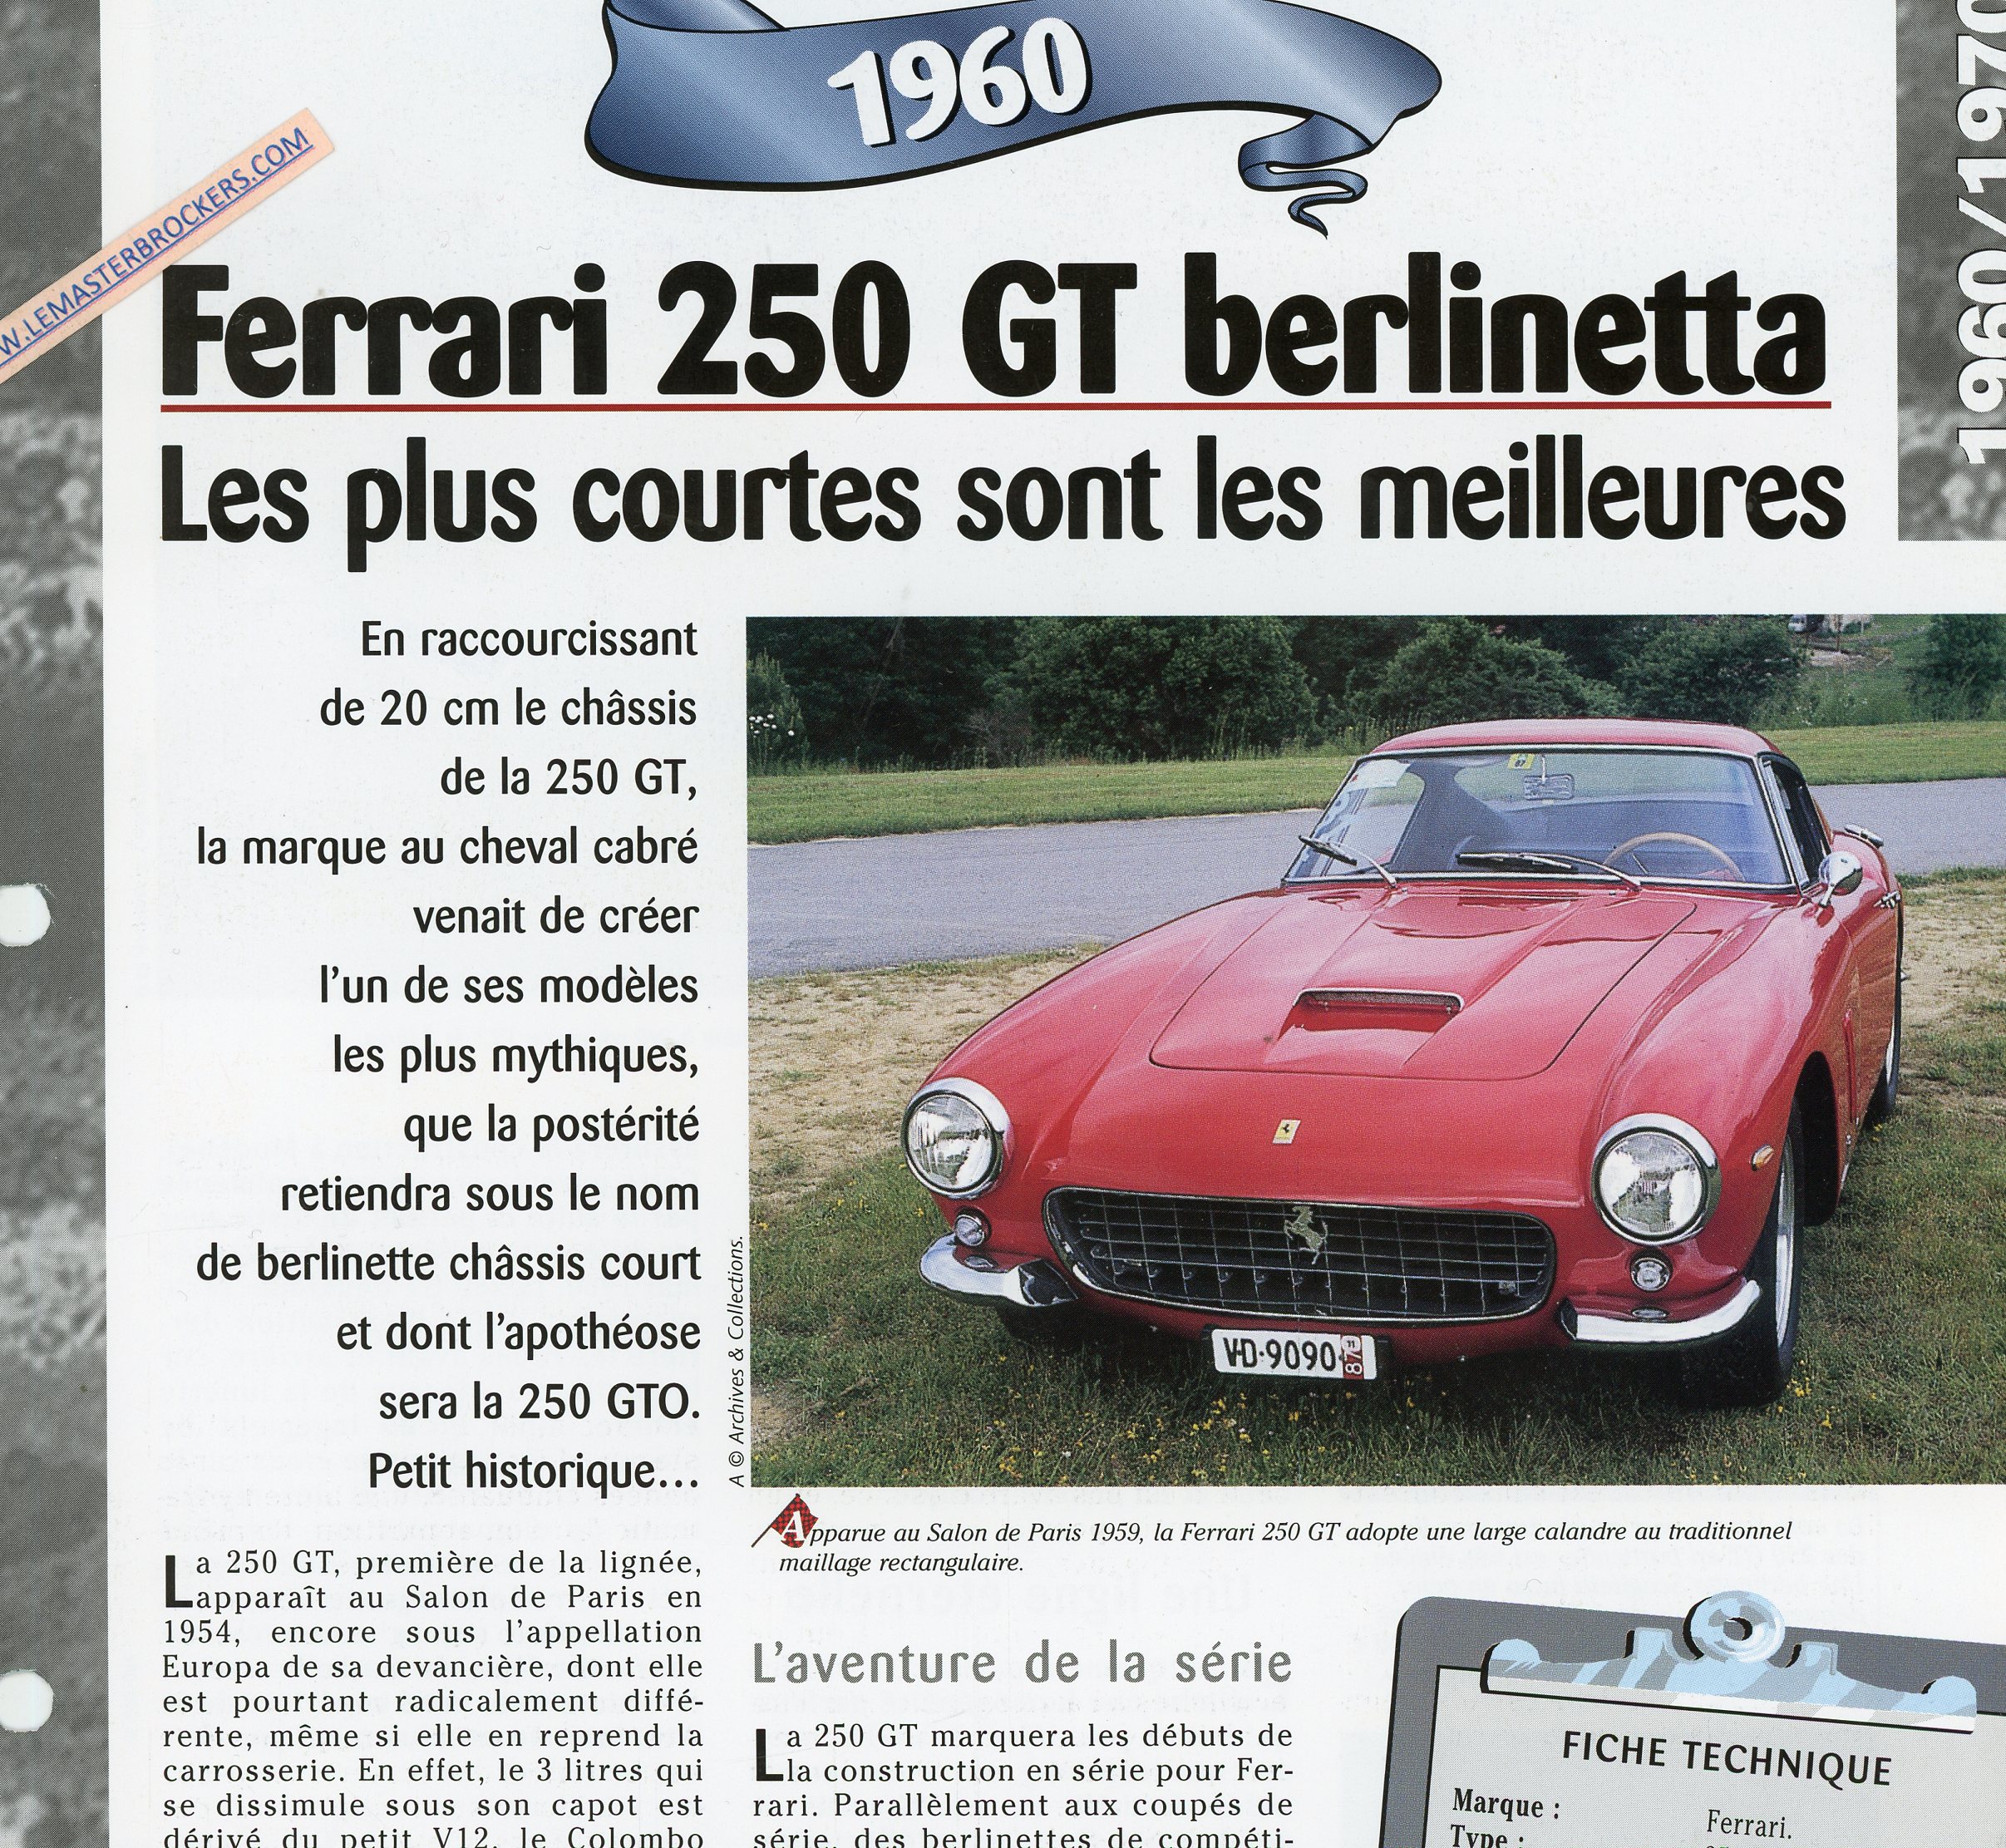 FERRARI-250-GT-BERLINETTA-1960-FICHE-TECHNIQUE-LEMASTERBROCKERS-CARS-CARD